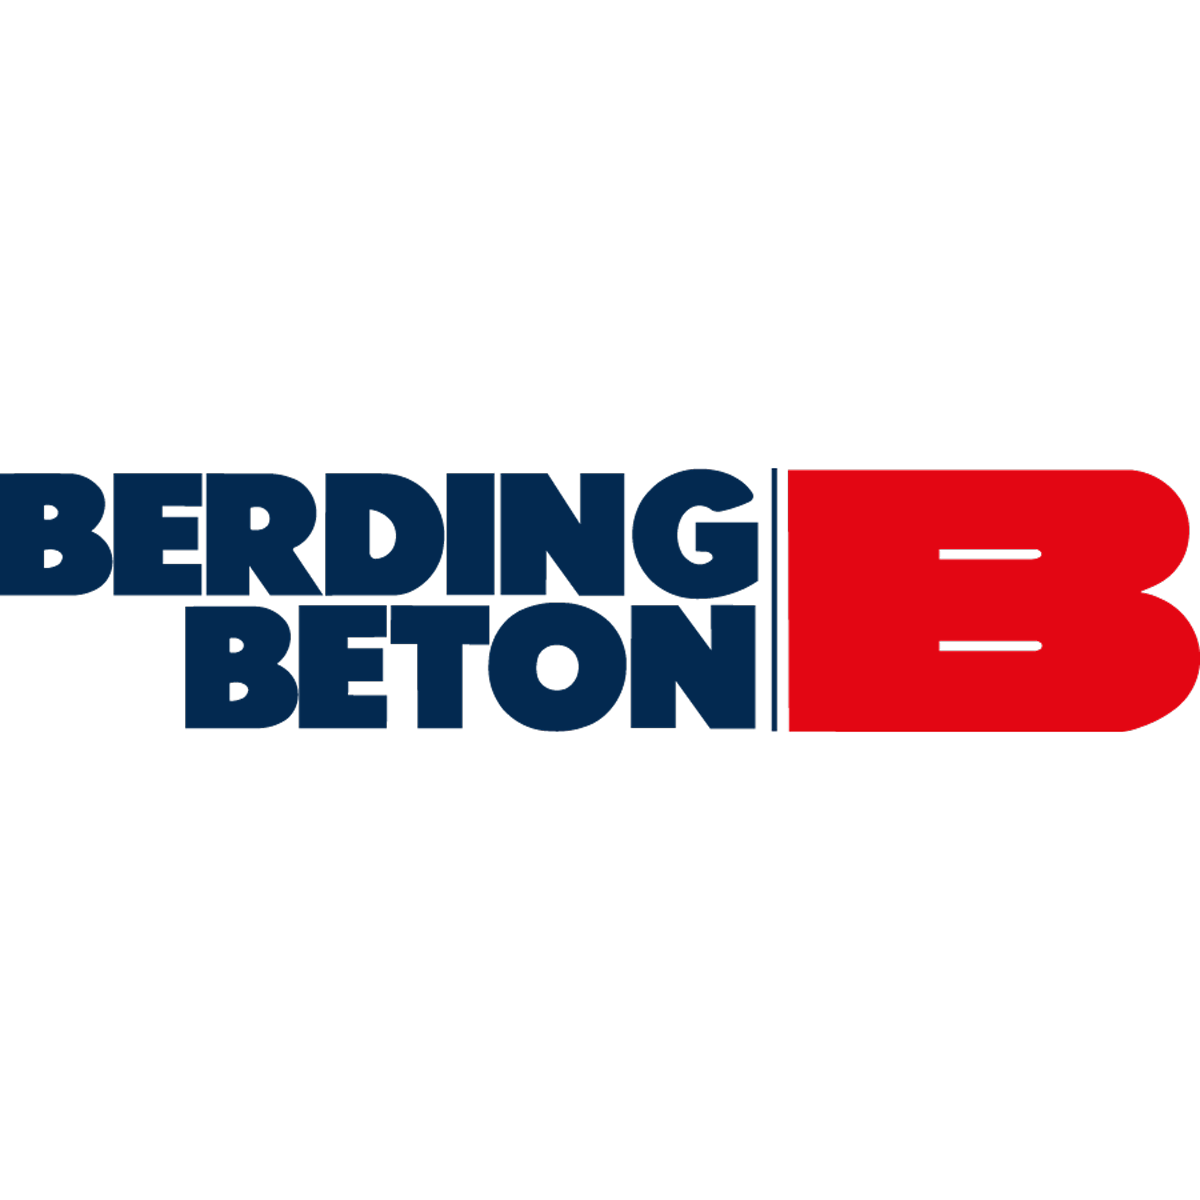 BERDING BETON GmbH